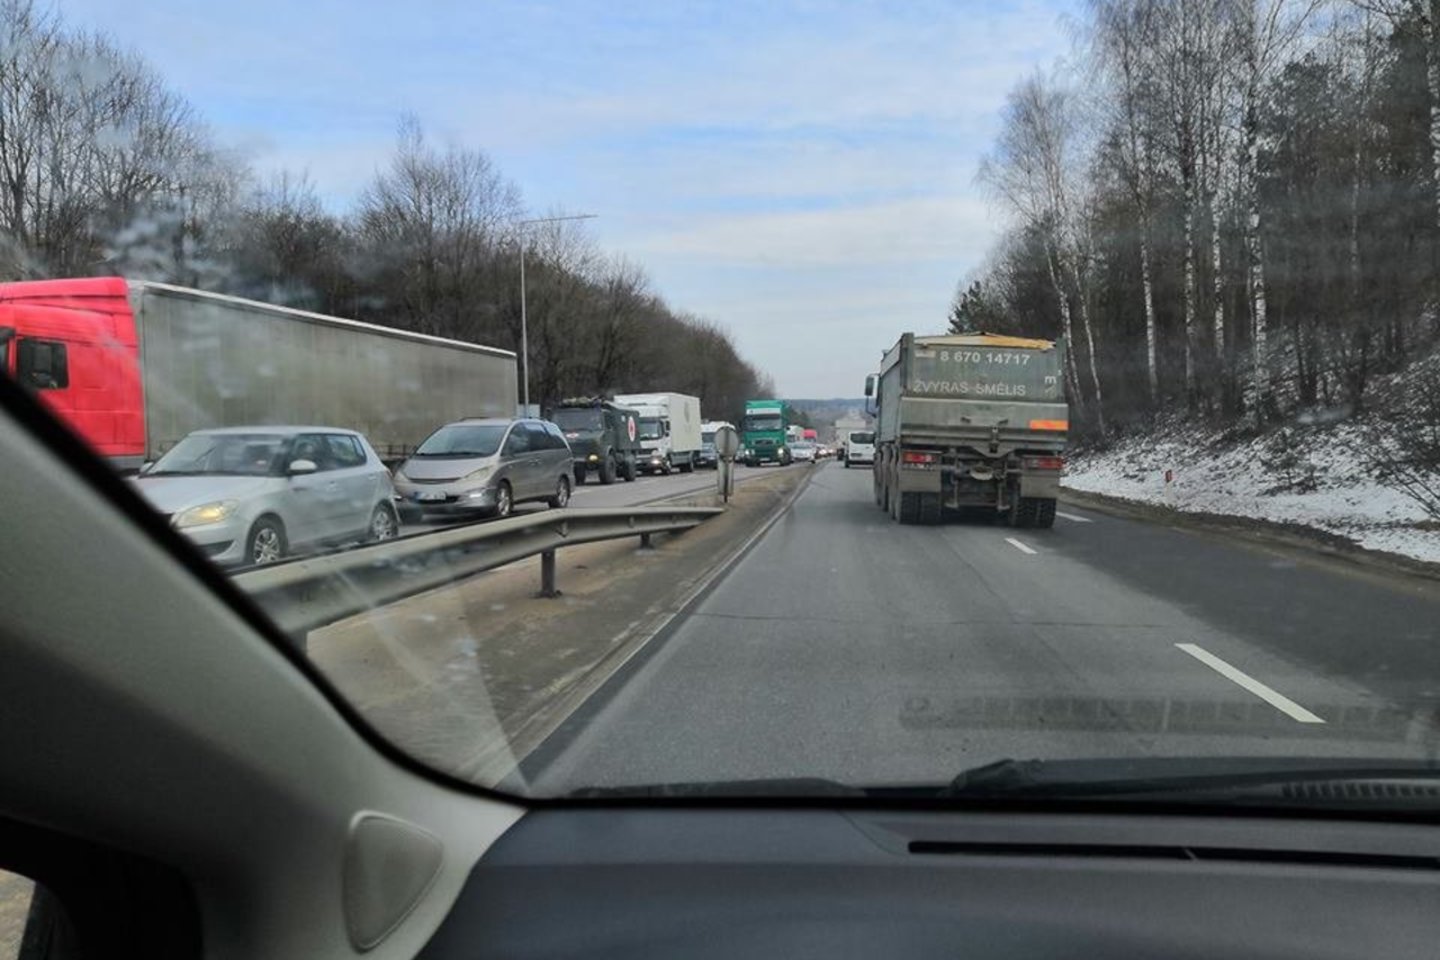  Vilniaus pakraštyje šviesoforo konstrukcijas išvartęs sunkvežimis blokavo judrų kelią.<br> Facebook/Reidas Vilniuje/Edgaro B. nuotr.